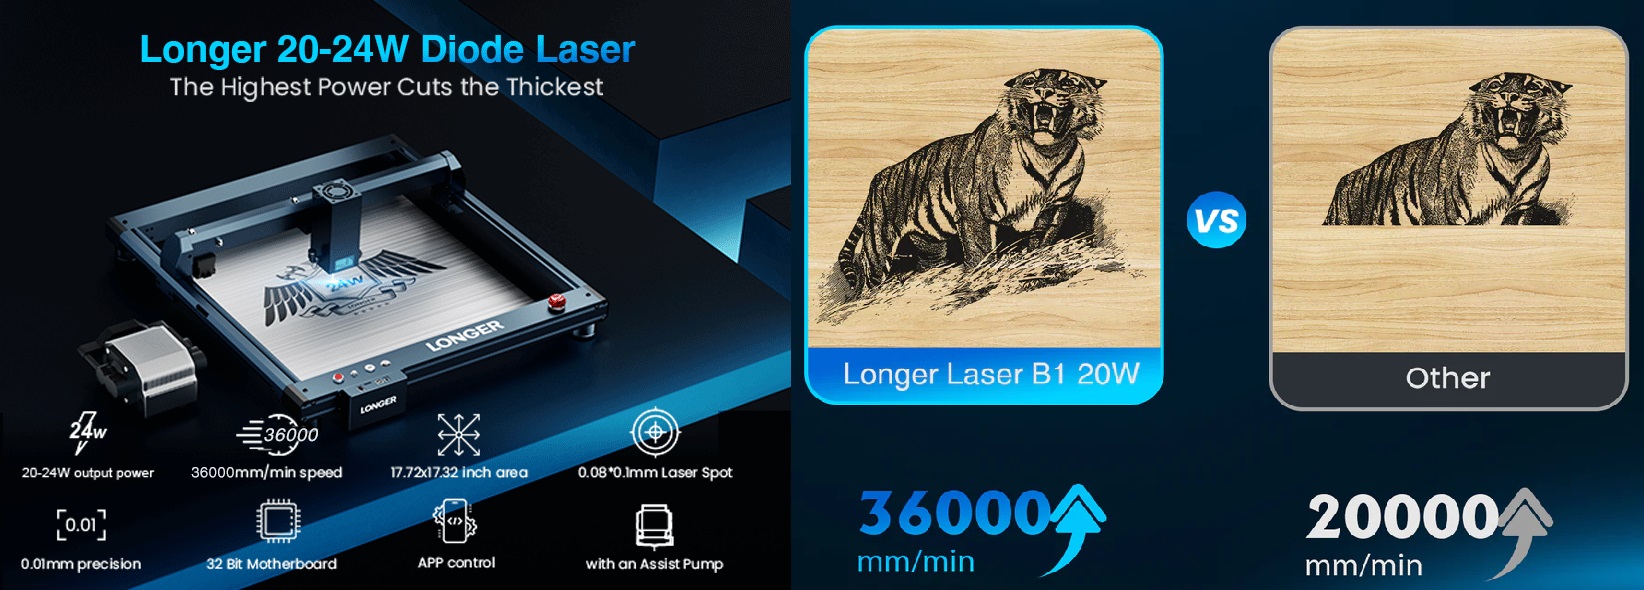 Laser Longer B1 20W : La stampante Laser Definitiva per Ogni Lavoratore